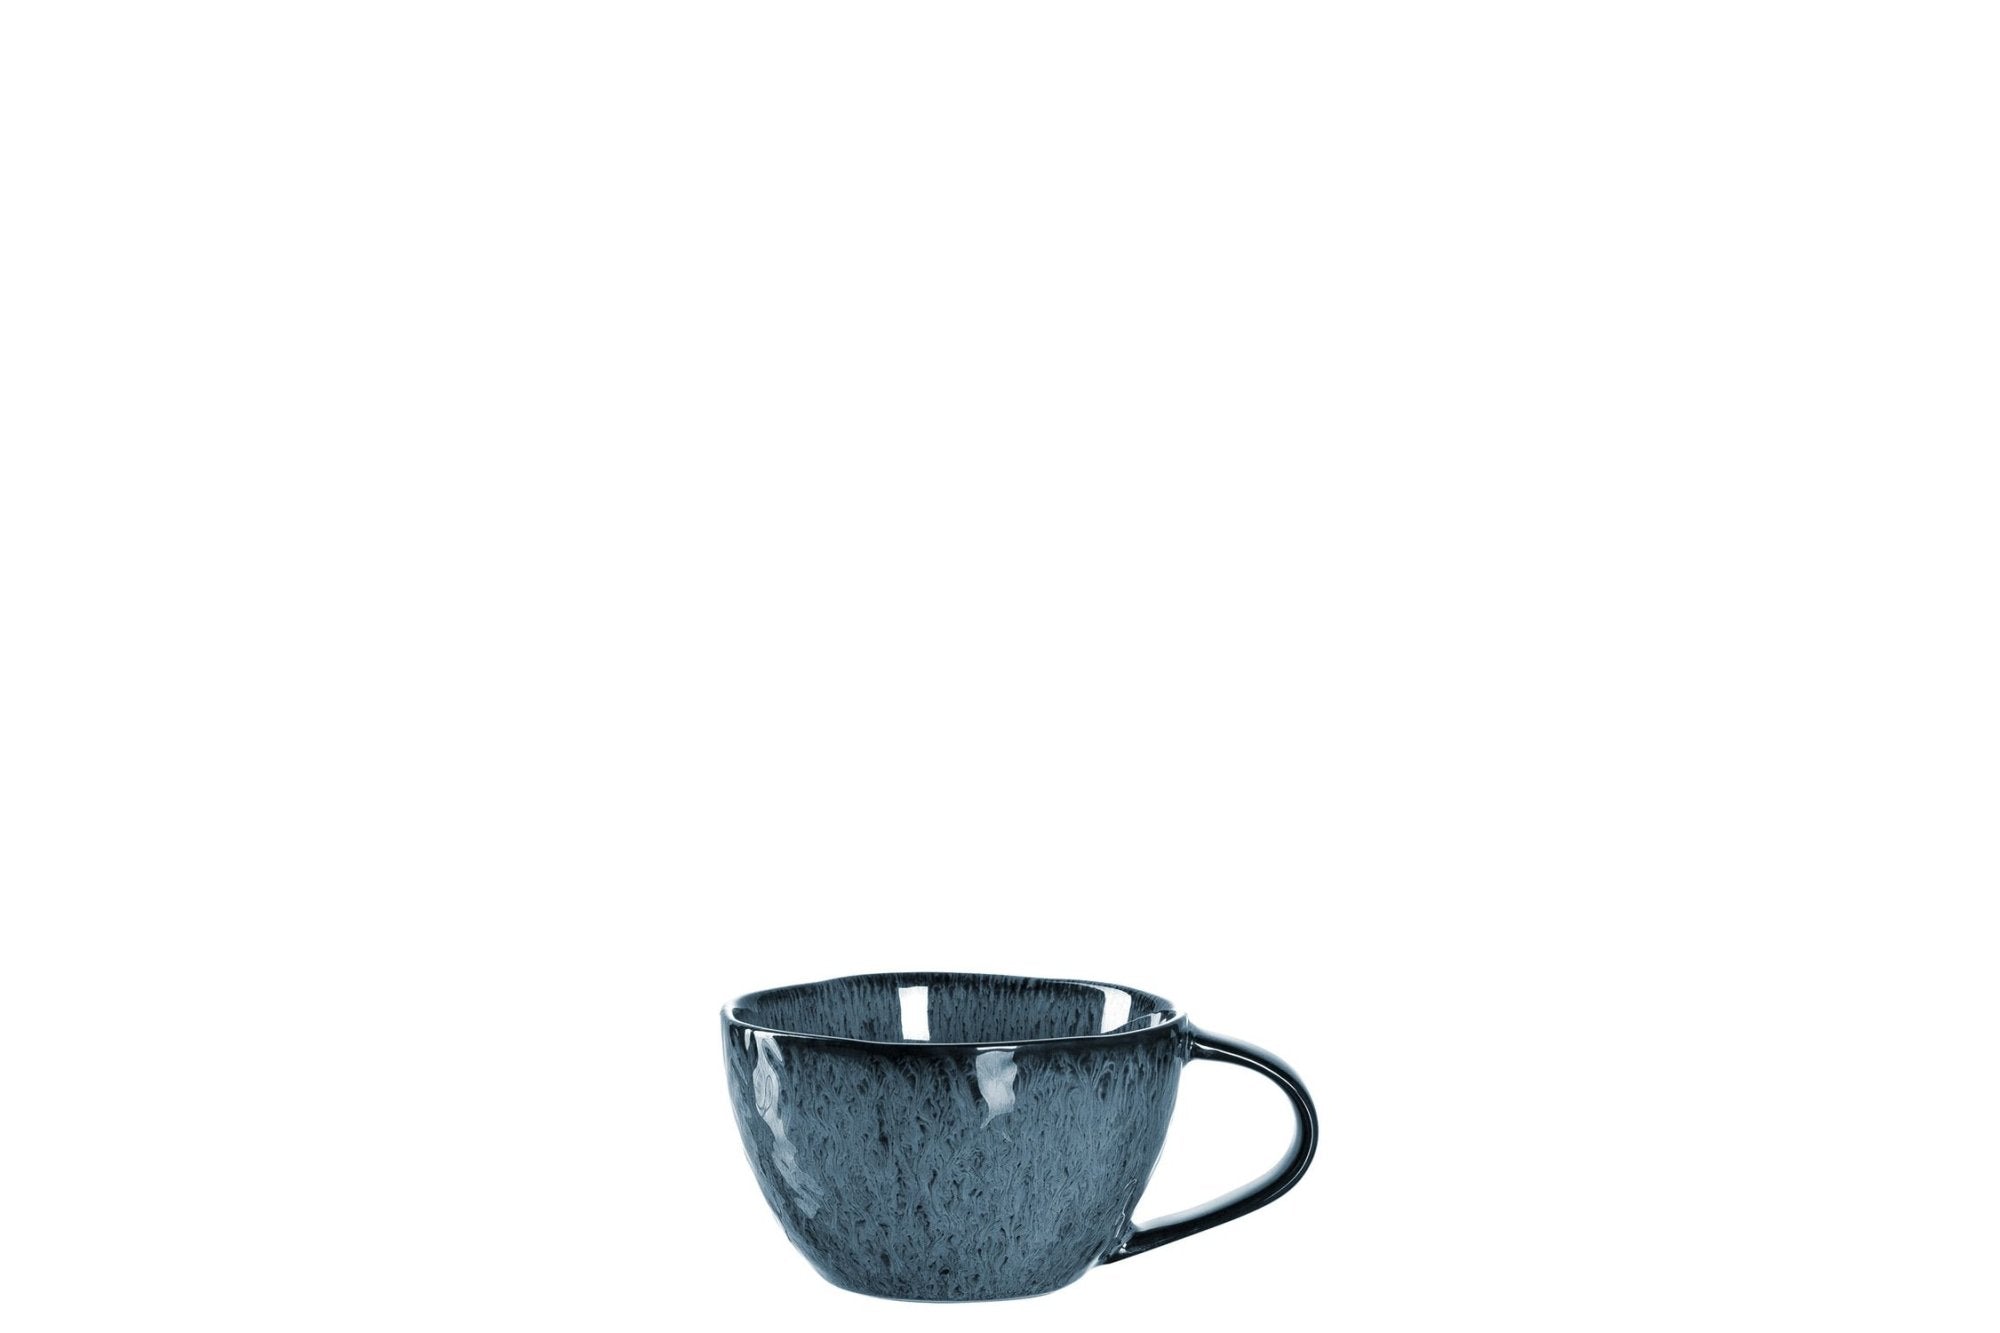 LEONARDO MATERA kék kávés-teás csésze 290ml